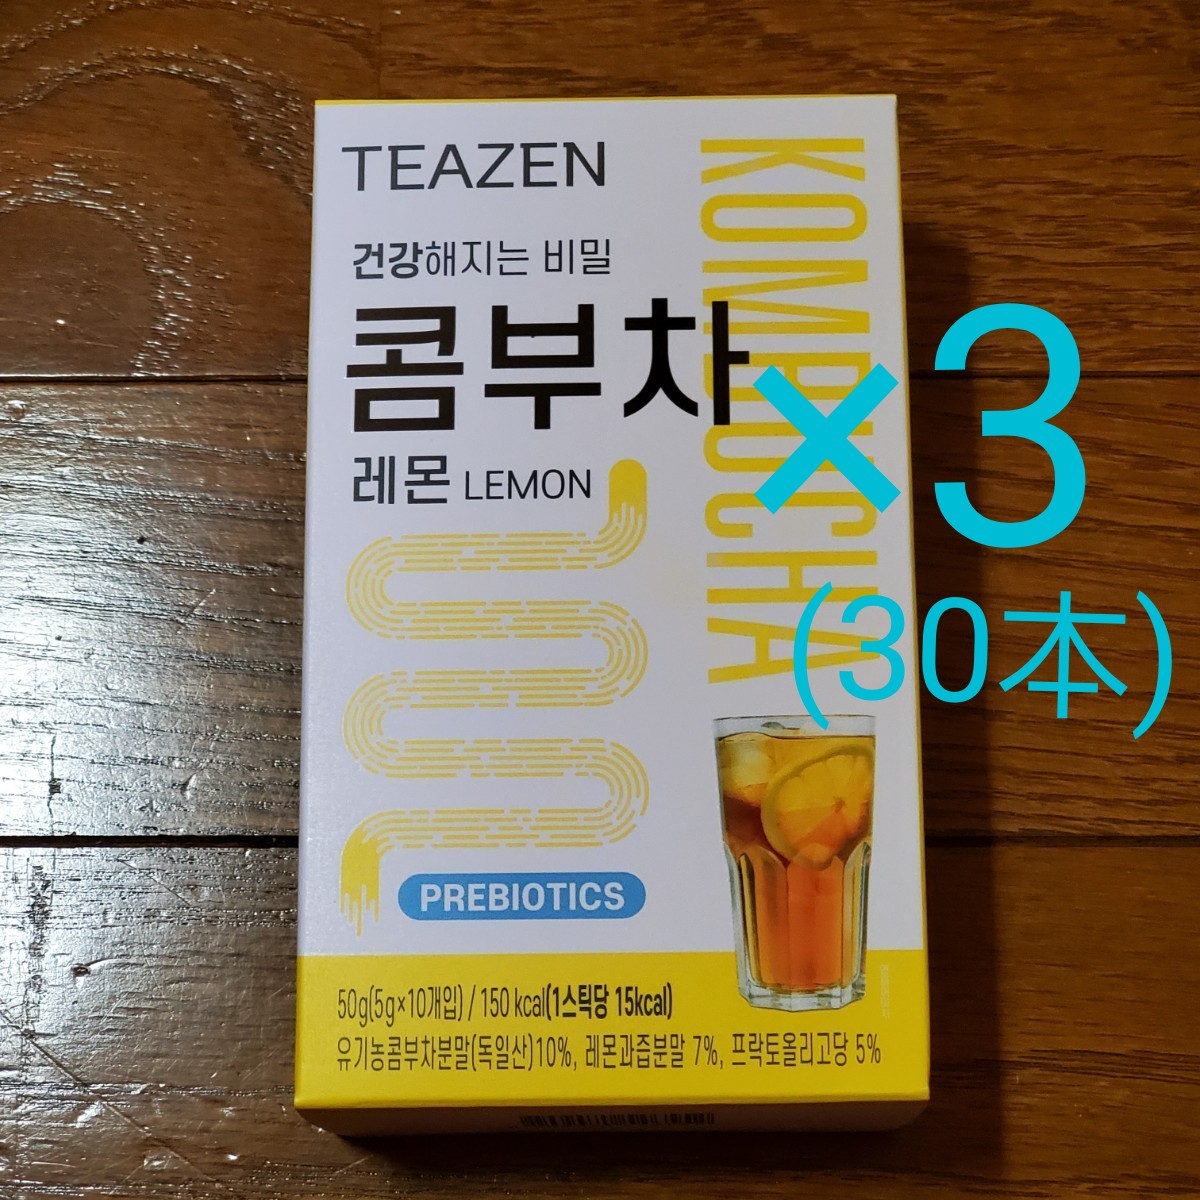  TEAZEN  ティーゼン コンブチャ レモン味 5g ×30